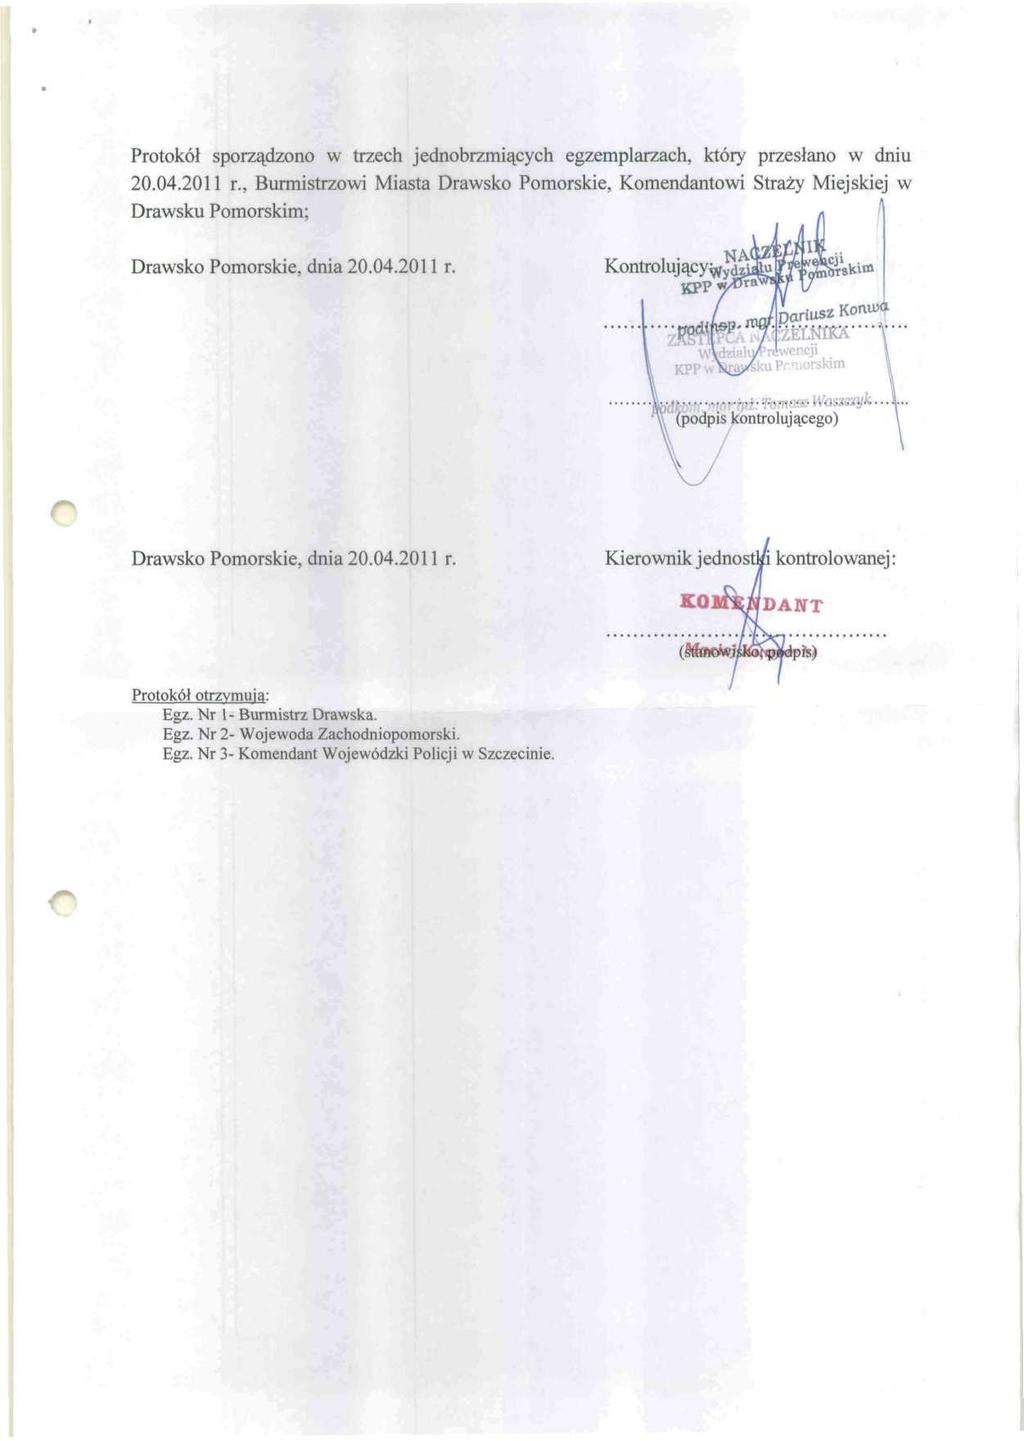 Protokół sporządzono w trzech jednobrzmiących egzemplarzach, który przesłano w dniu 20.04.2011 r.